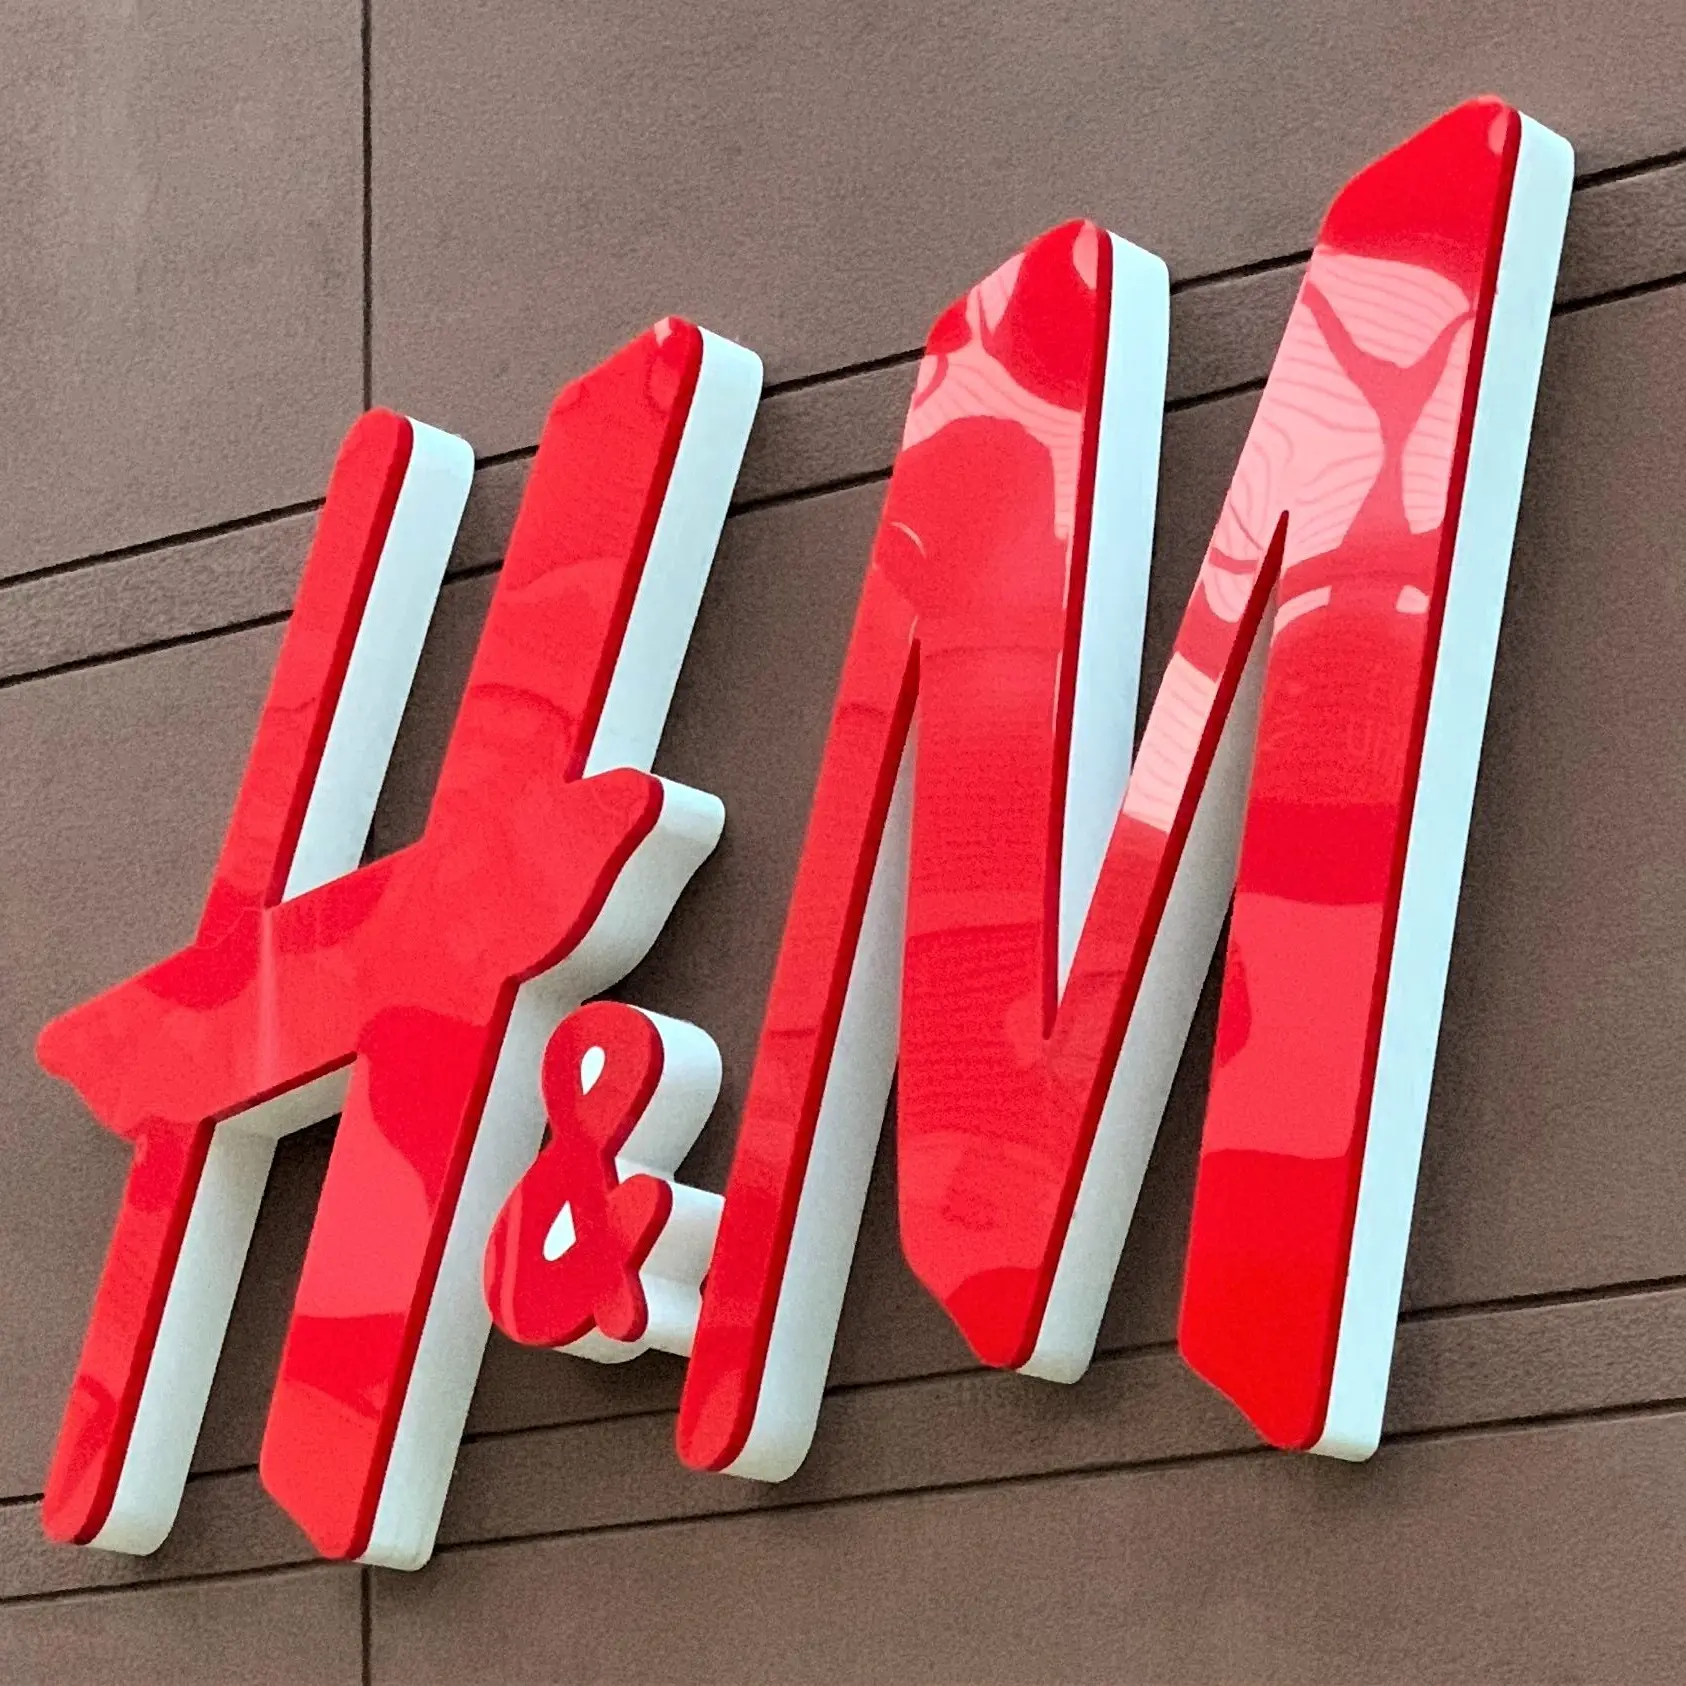 Latina, giustizia è fatta per una lavoratrice di H&M. Filcams: Le aziende imparino che le persone non sono numeri